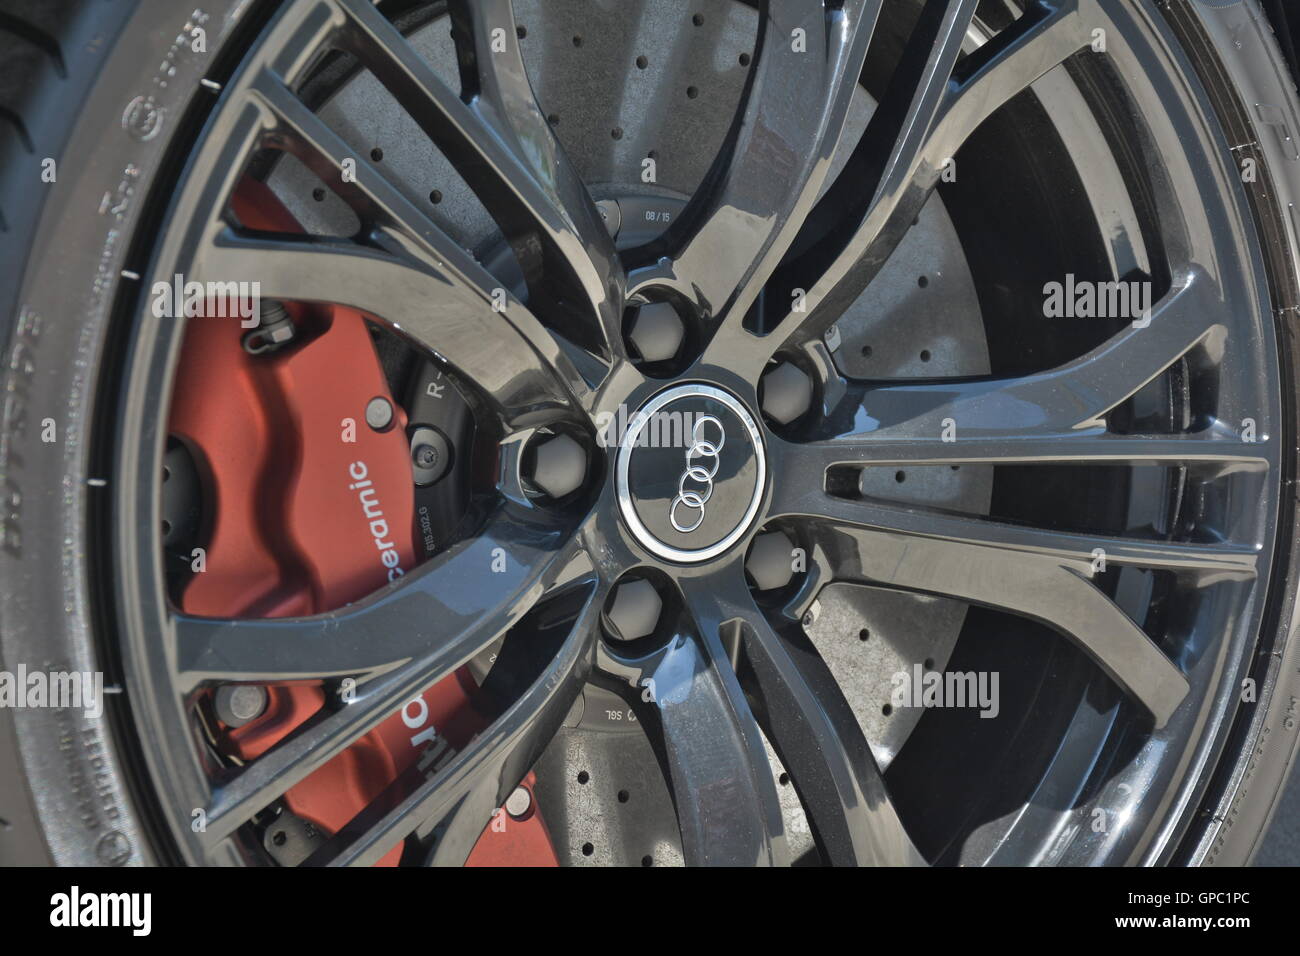 Audi R8 Morton Grove Wettbewerb Kohlefaser-Felgen in schwarz v8 rot Bremsen  Carbon-Keramik-Bremsen hochwertige Definition einzigartig Stockfotografie -  Alamy